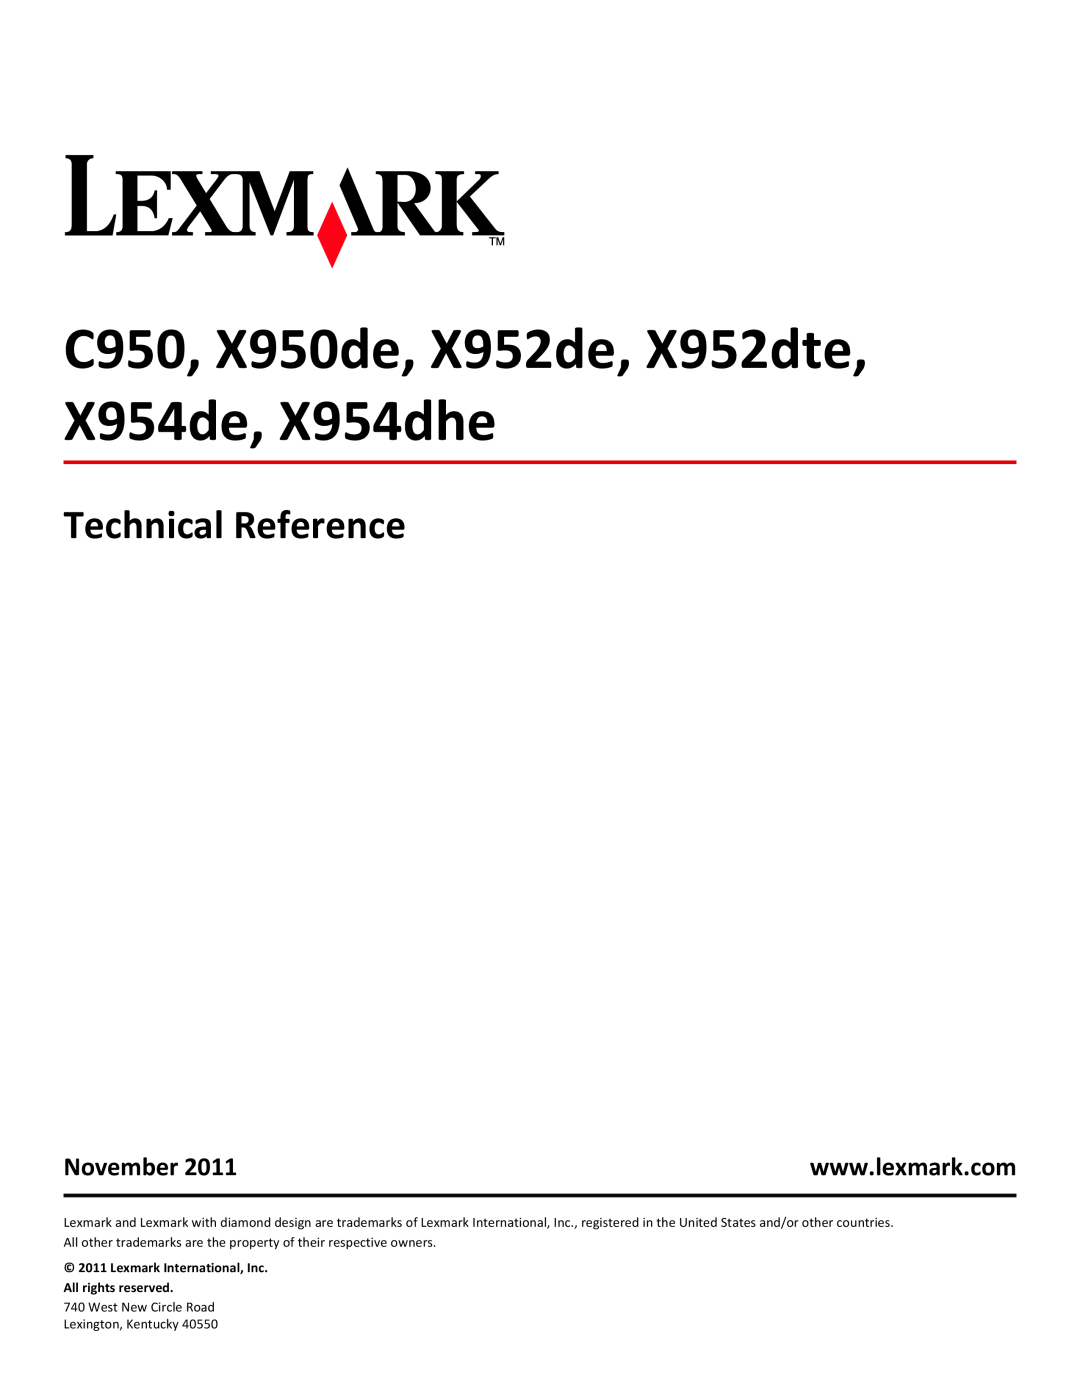 Lexmark 950DE, 952DE, 954DE, 954DHE manual Technical Reference, November, C950, X950de, X952de, X952dte, X954de, X954dhe 